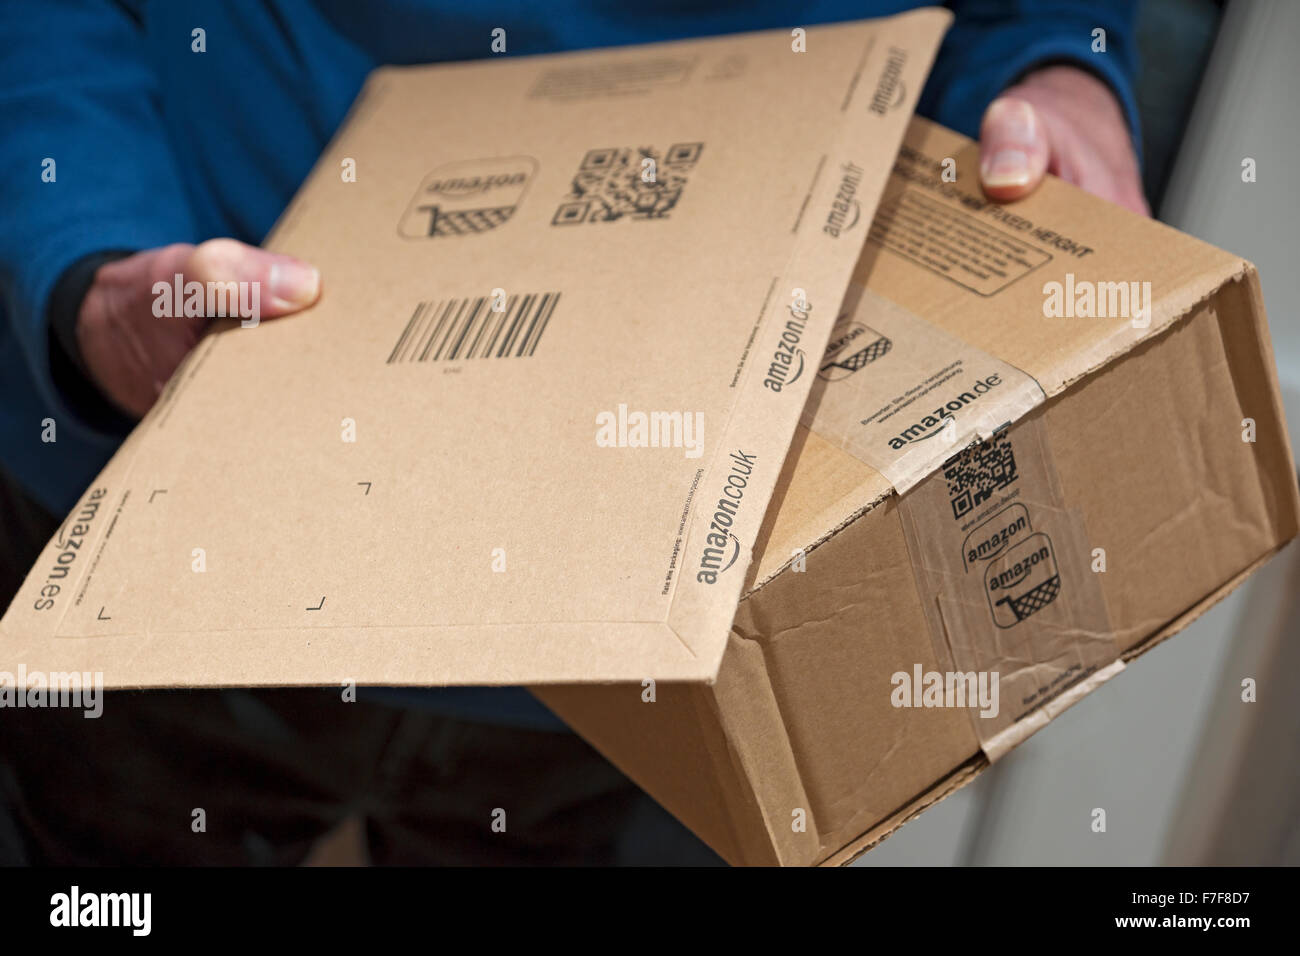 Nahaufnahme der Person Mann hält mit Amazon-Pakete Paket nach Hause  Online-Lieferung Einkaufen England Vereinigtes Königreich GB Großbritannien  Stockfotografie - Alamy